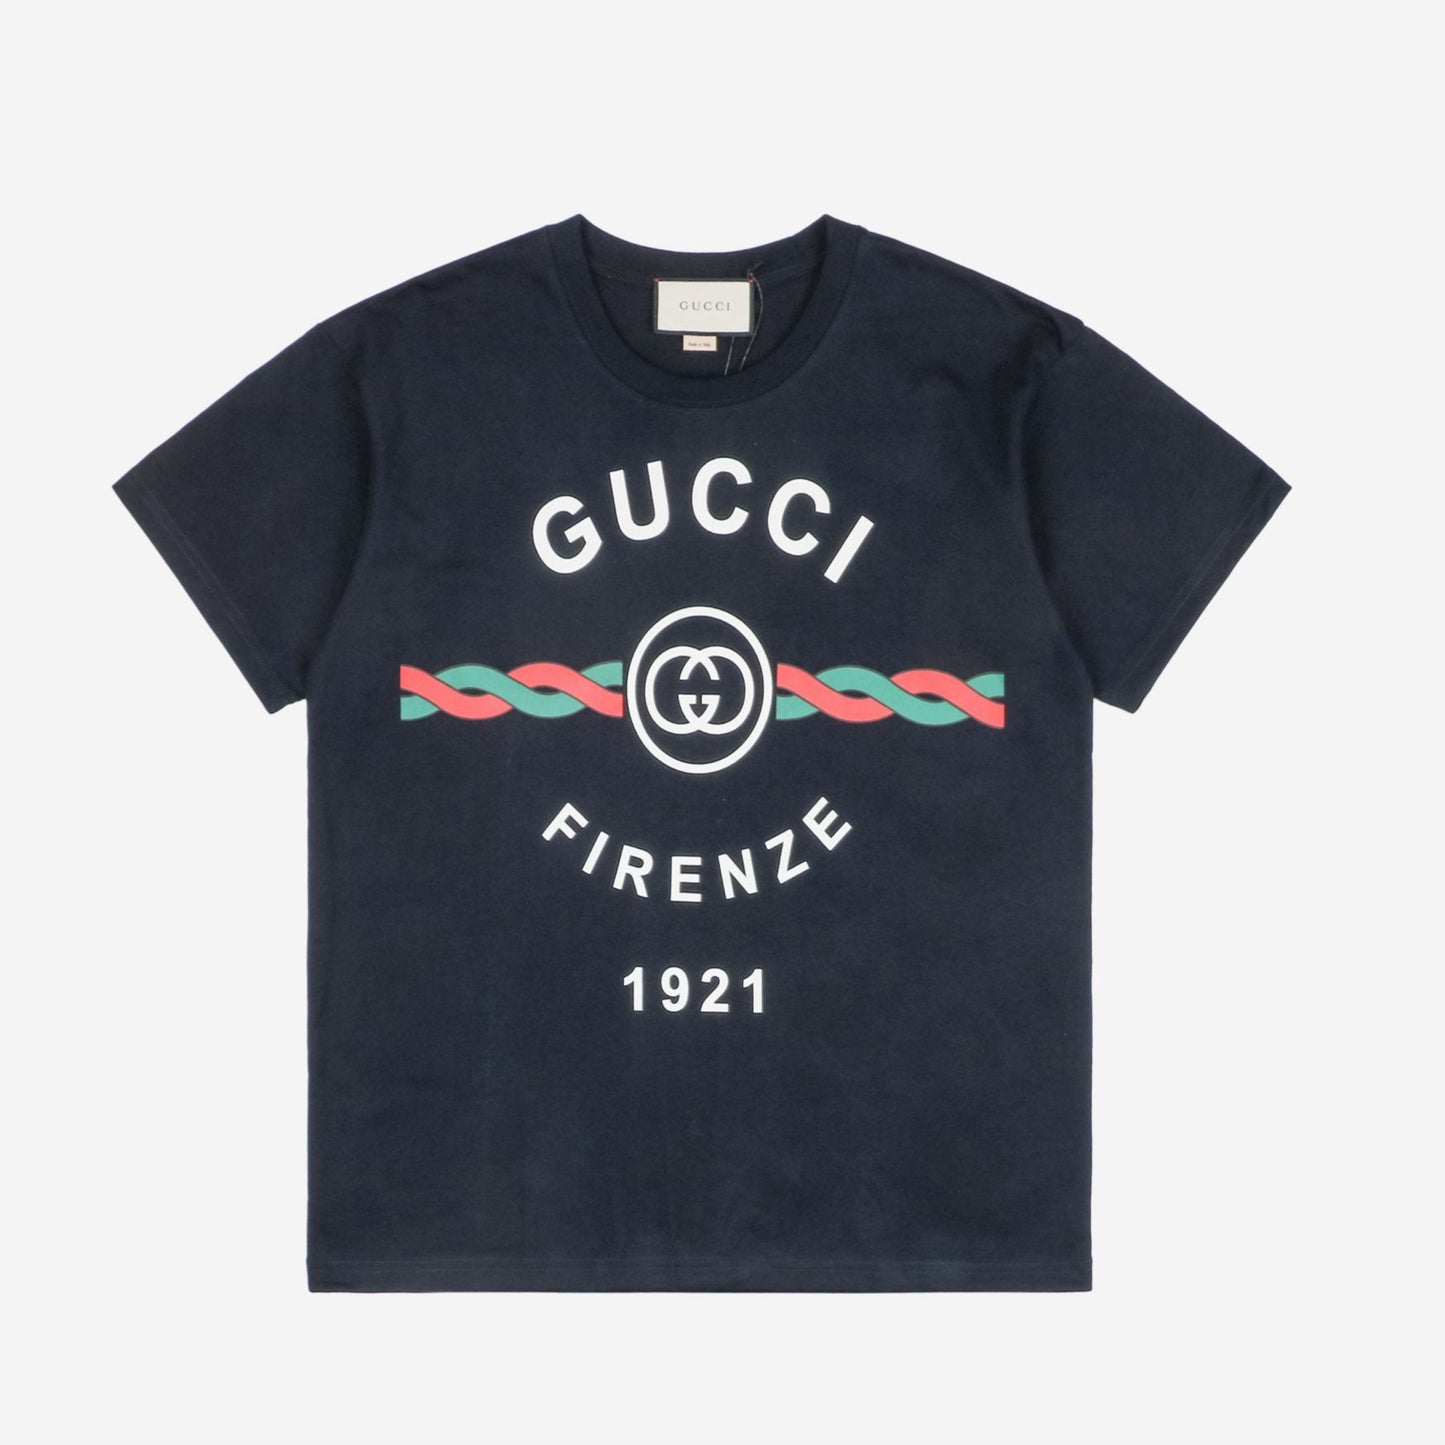 Gucc1 Cotton Jersey 'Gucci Firenze 1921' Dark Blue  T-Shirt